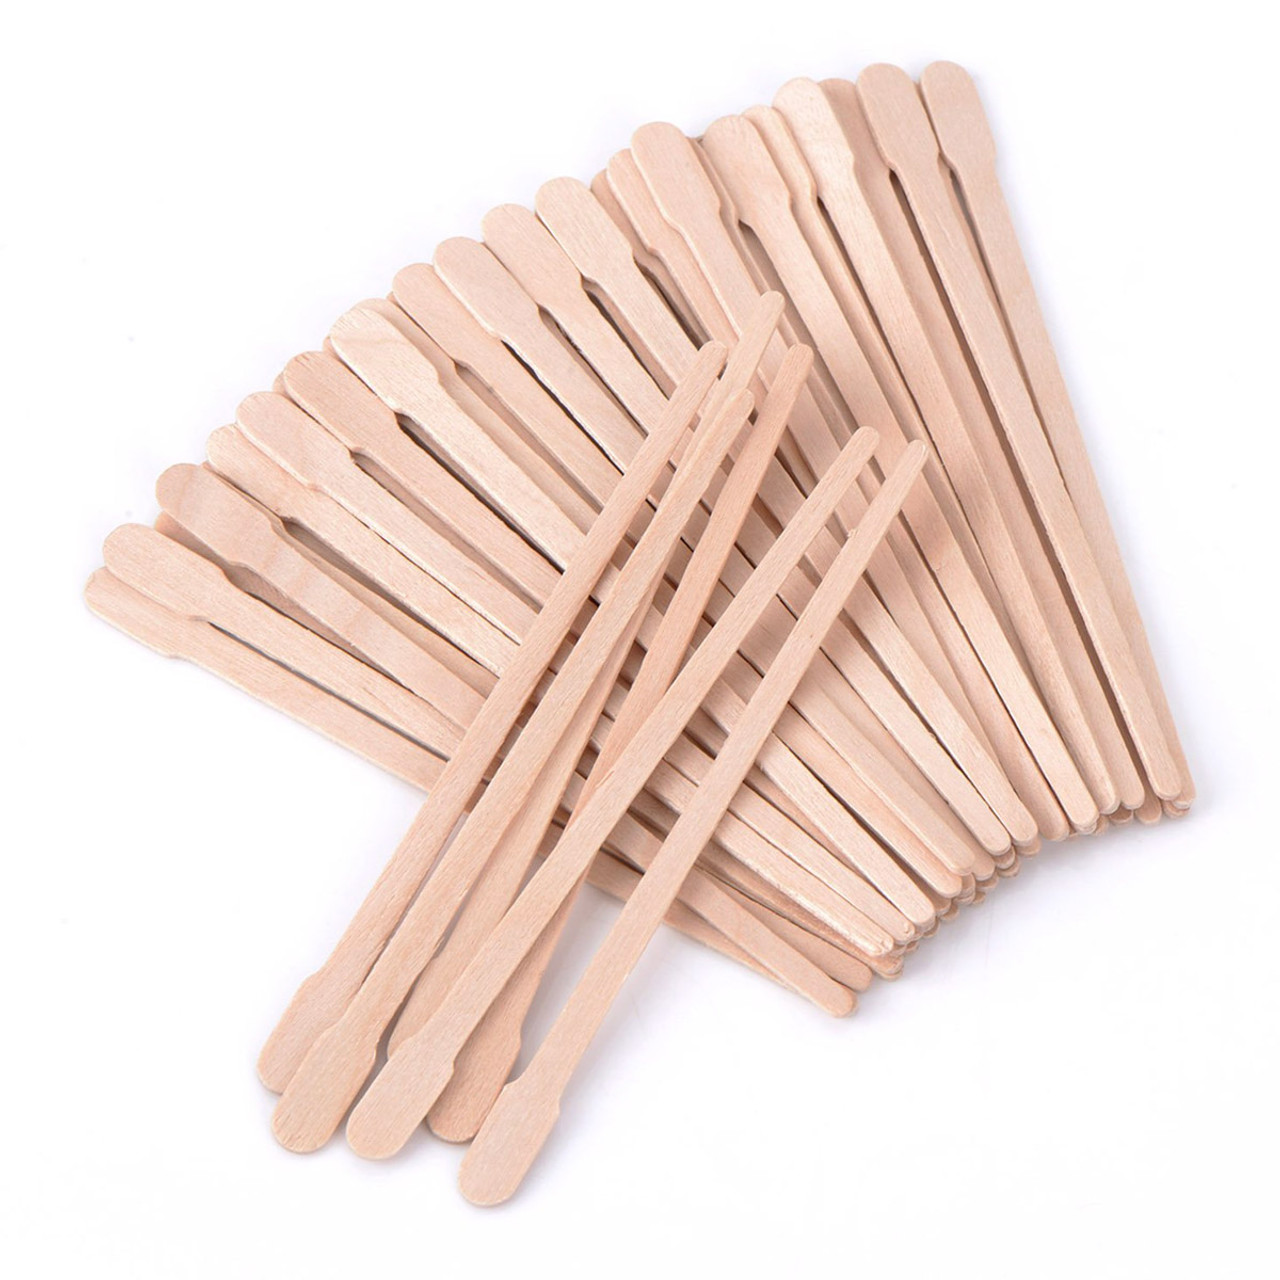  Waxing Stick, 100Pcs/Box Wooden Waxing Stick Spatula